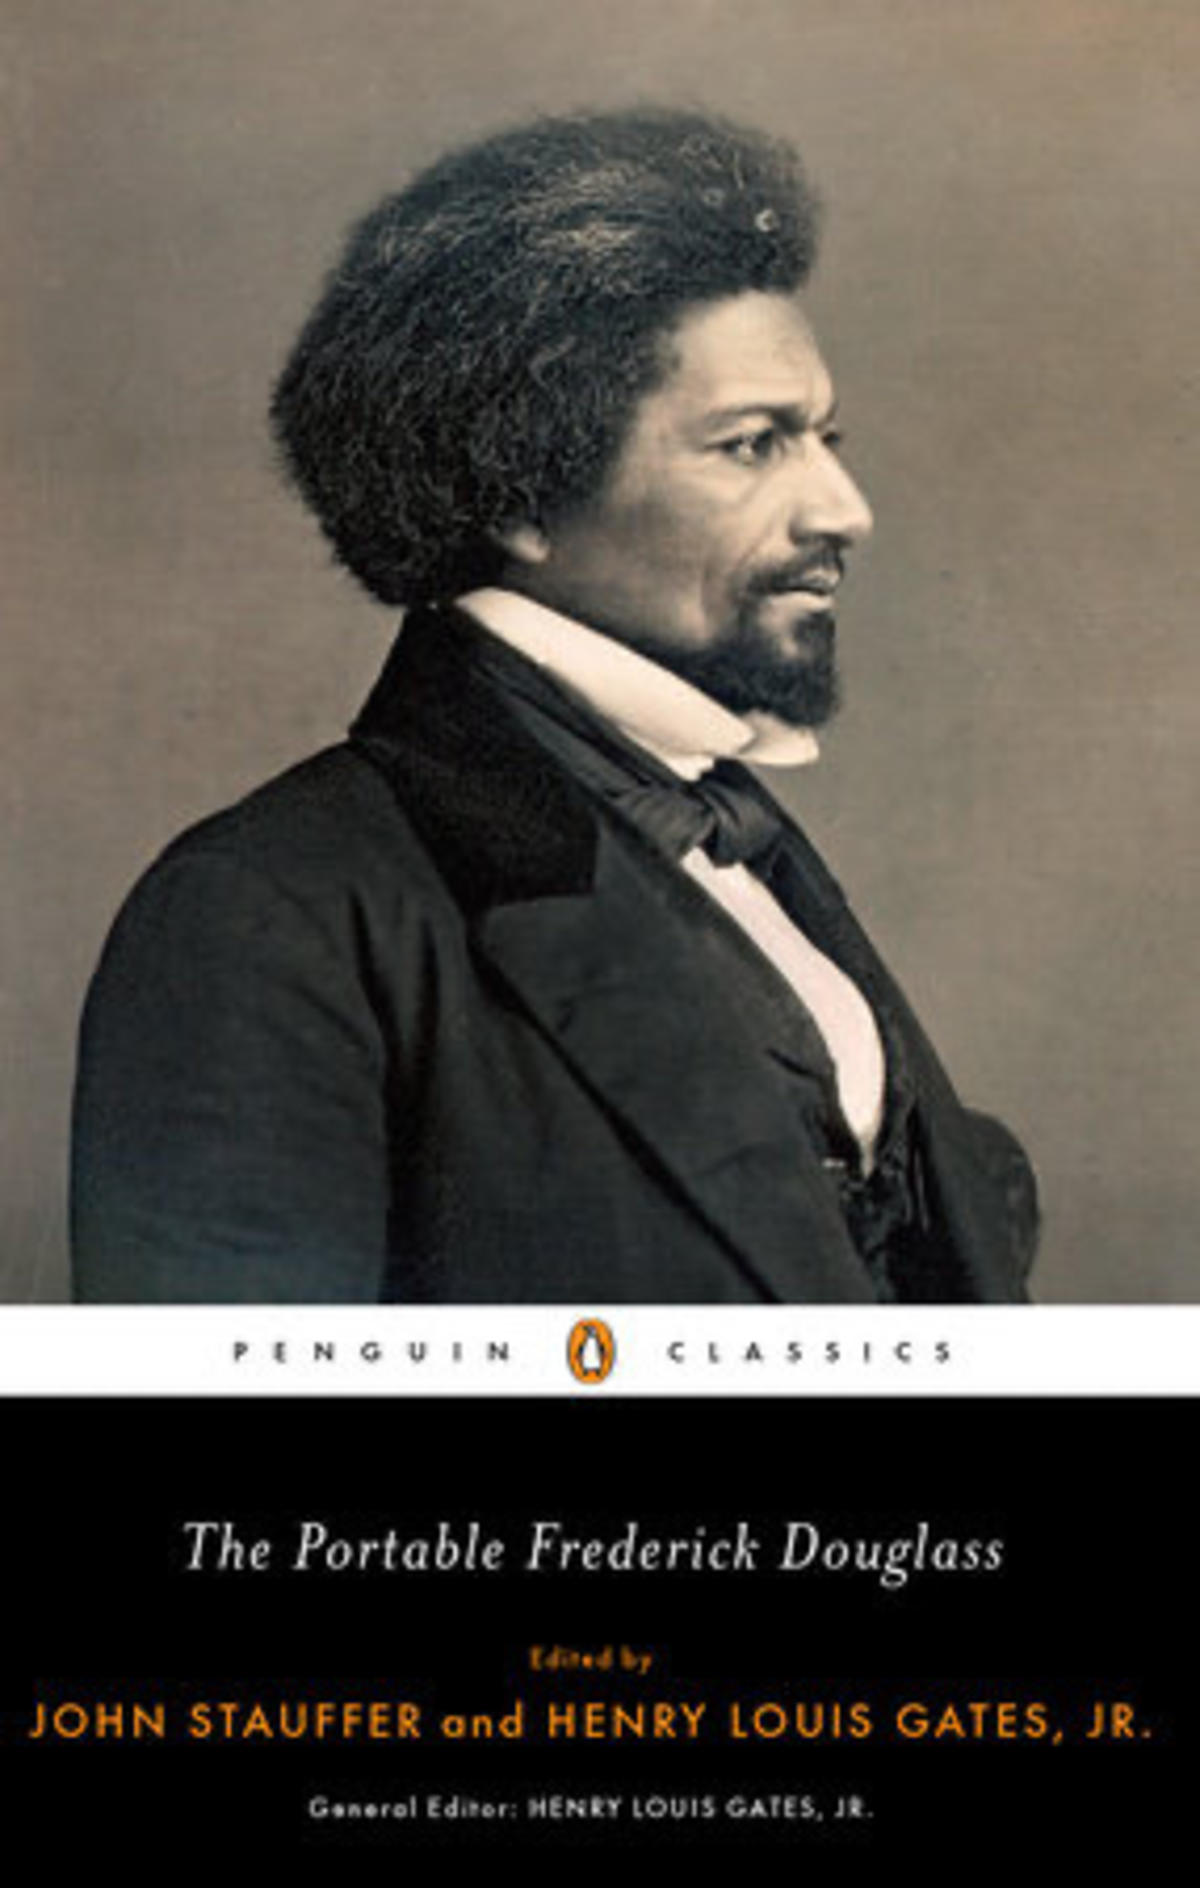 The Portable Frederick Douglass, book cover